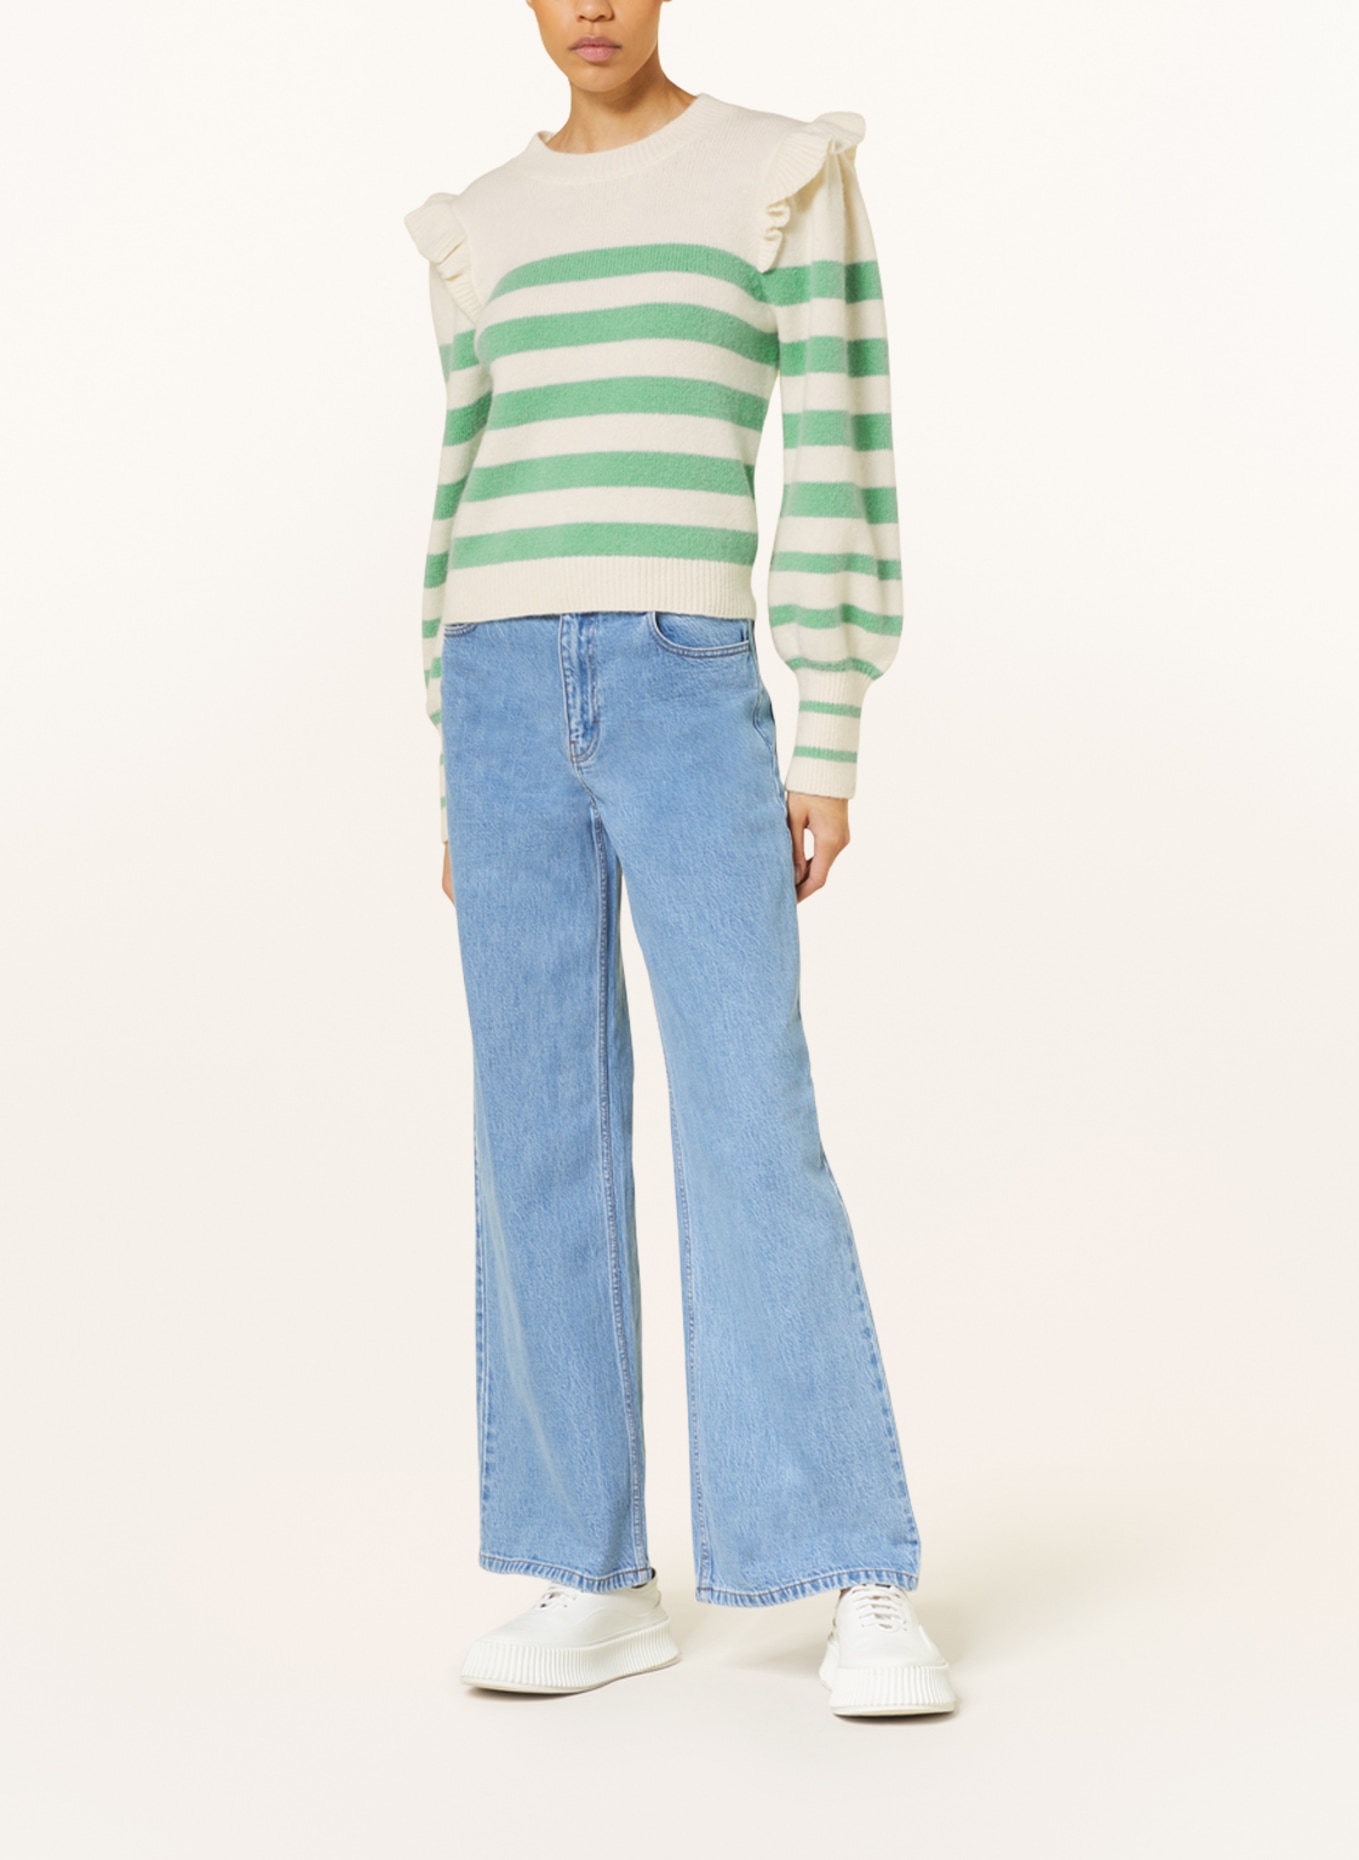 BAUM UND PFERDGARTEN Pullover CAMRYN mit Volants, Farbe: ECRU/ HELLGRÜN (Bild 2)